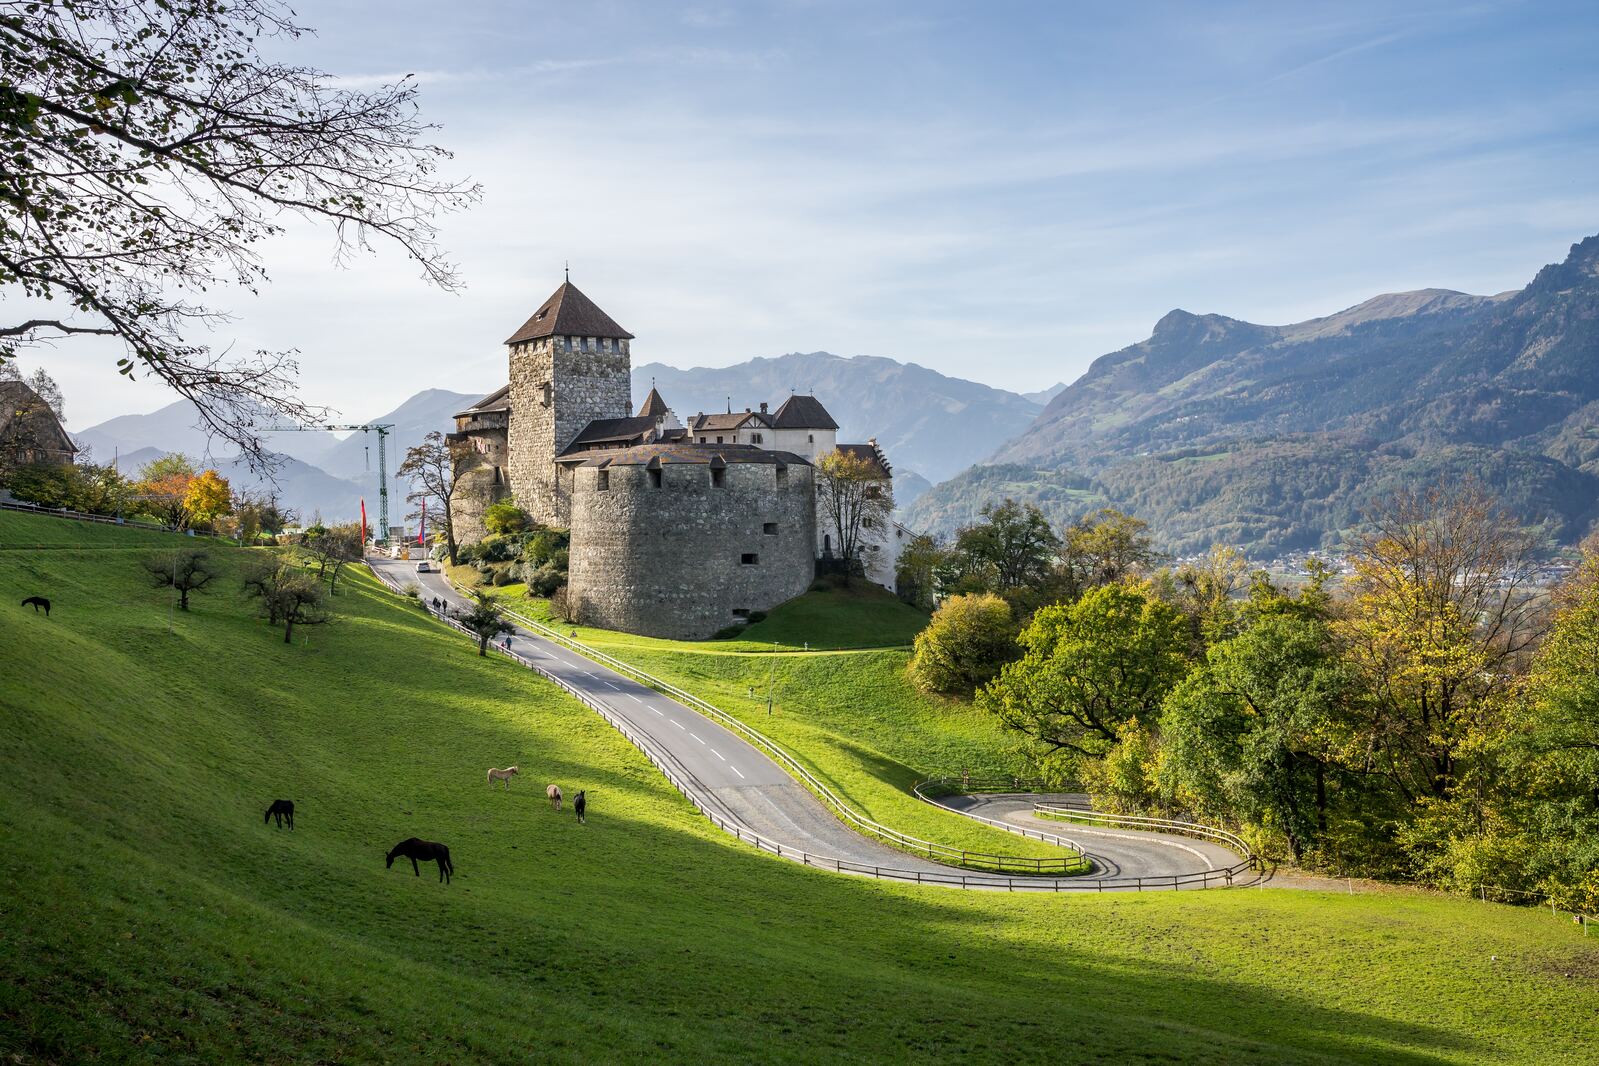 Liechtenstein photo locations